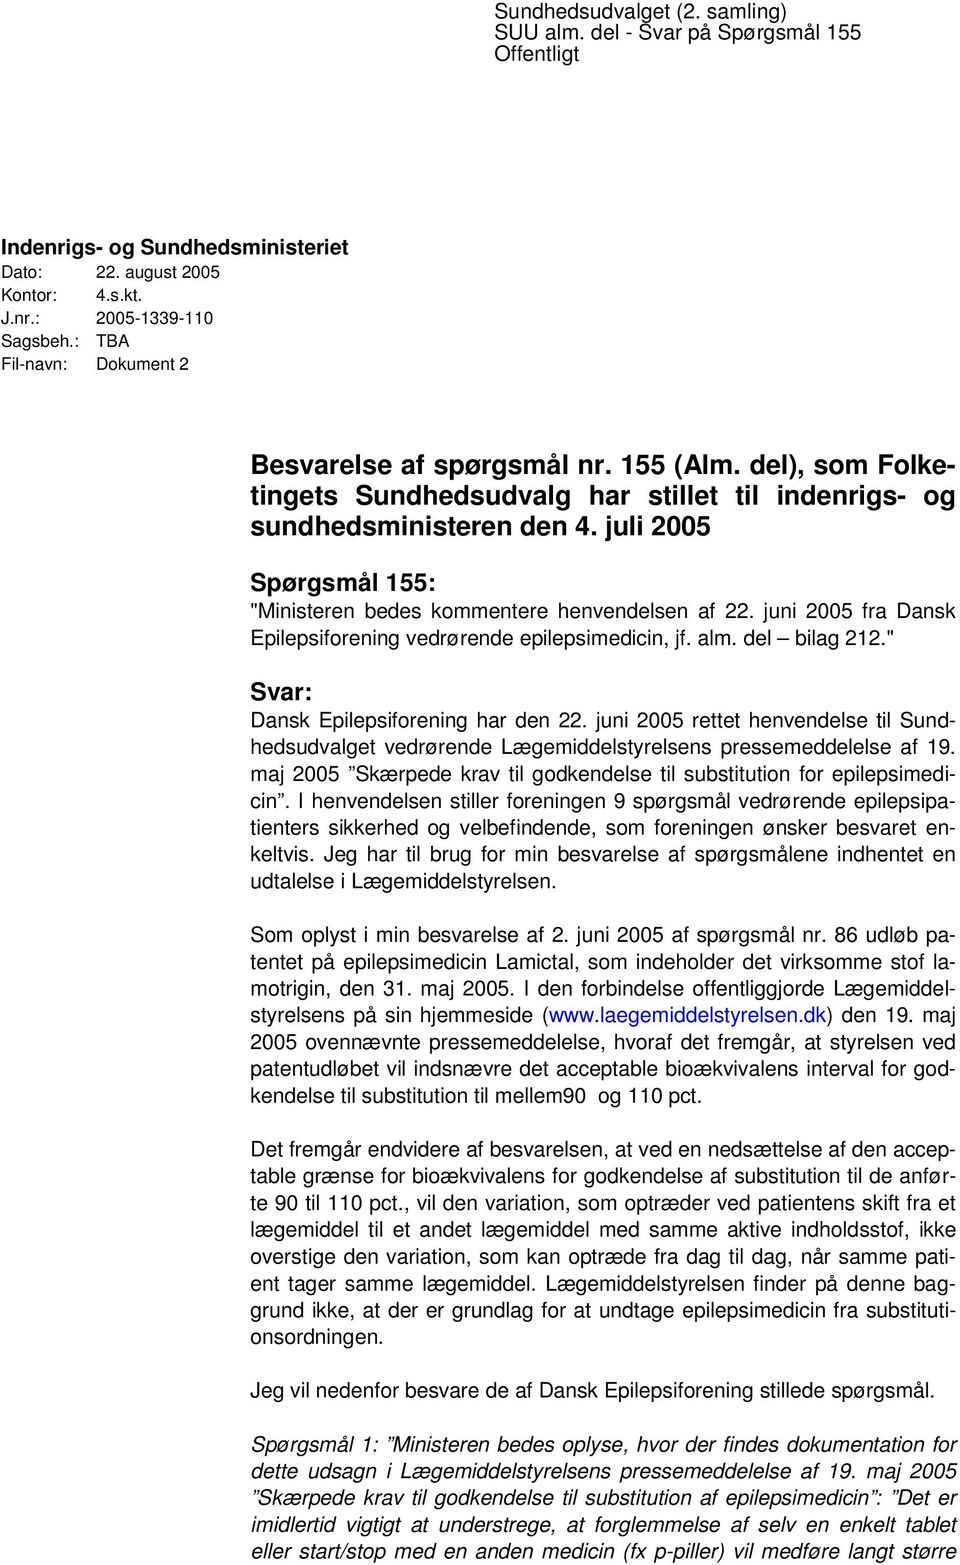 juli 2005 Spørgsmål 155: "Ministeren bedes kommentere henvendelsen af 22. juni 2005 fra Dansk Epilepsiforening vedrørende epilepsimedicin, jf. alm. del bilag 212.